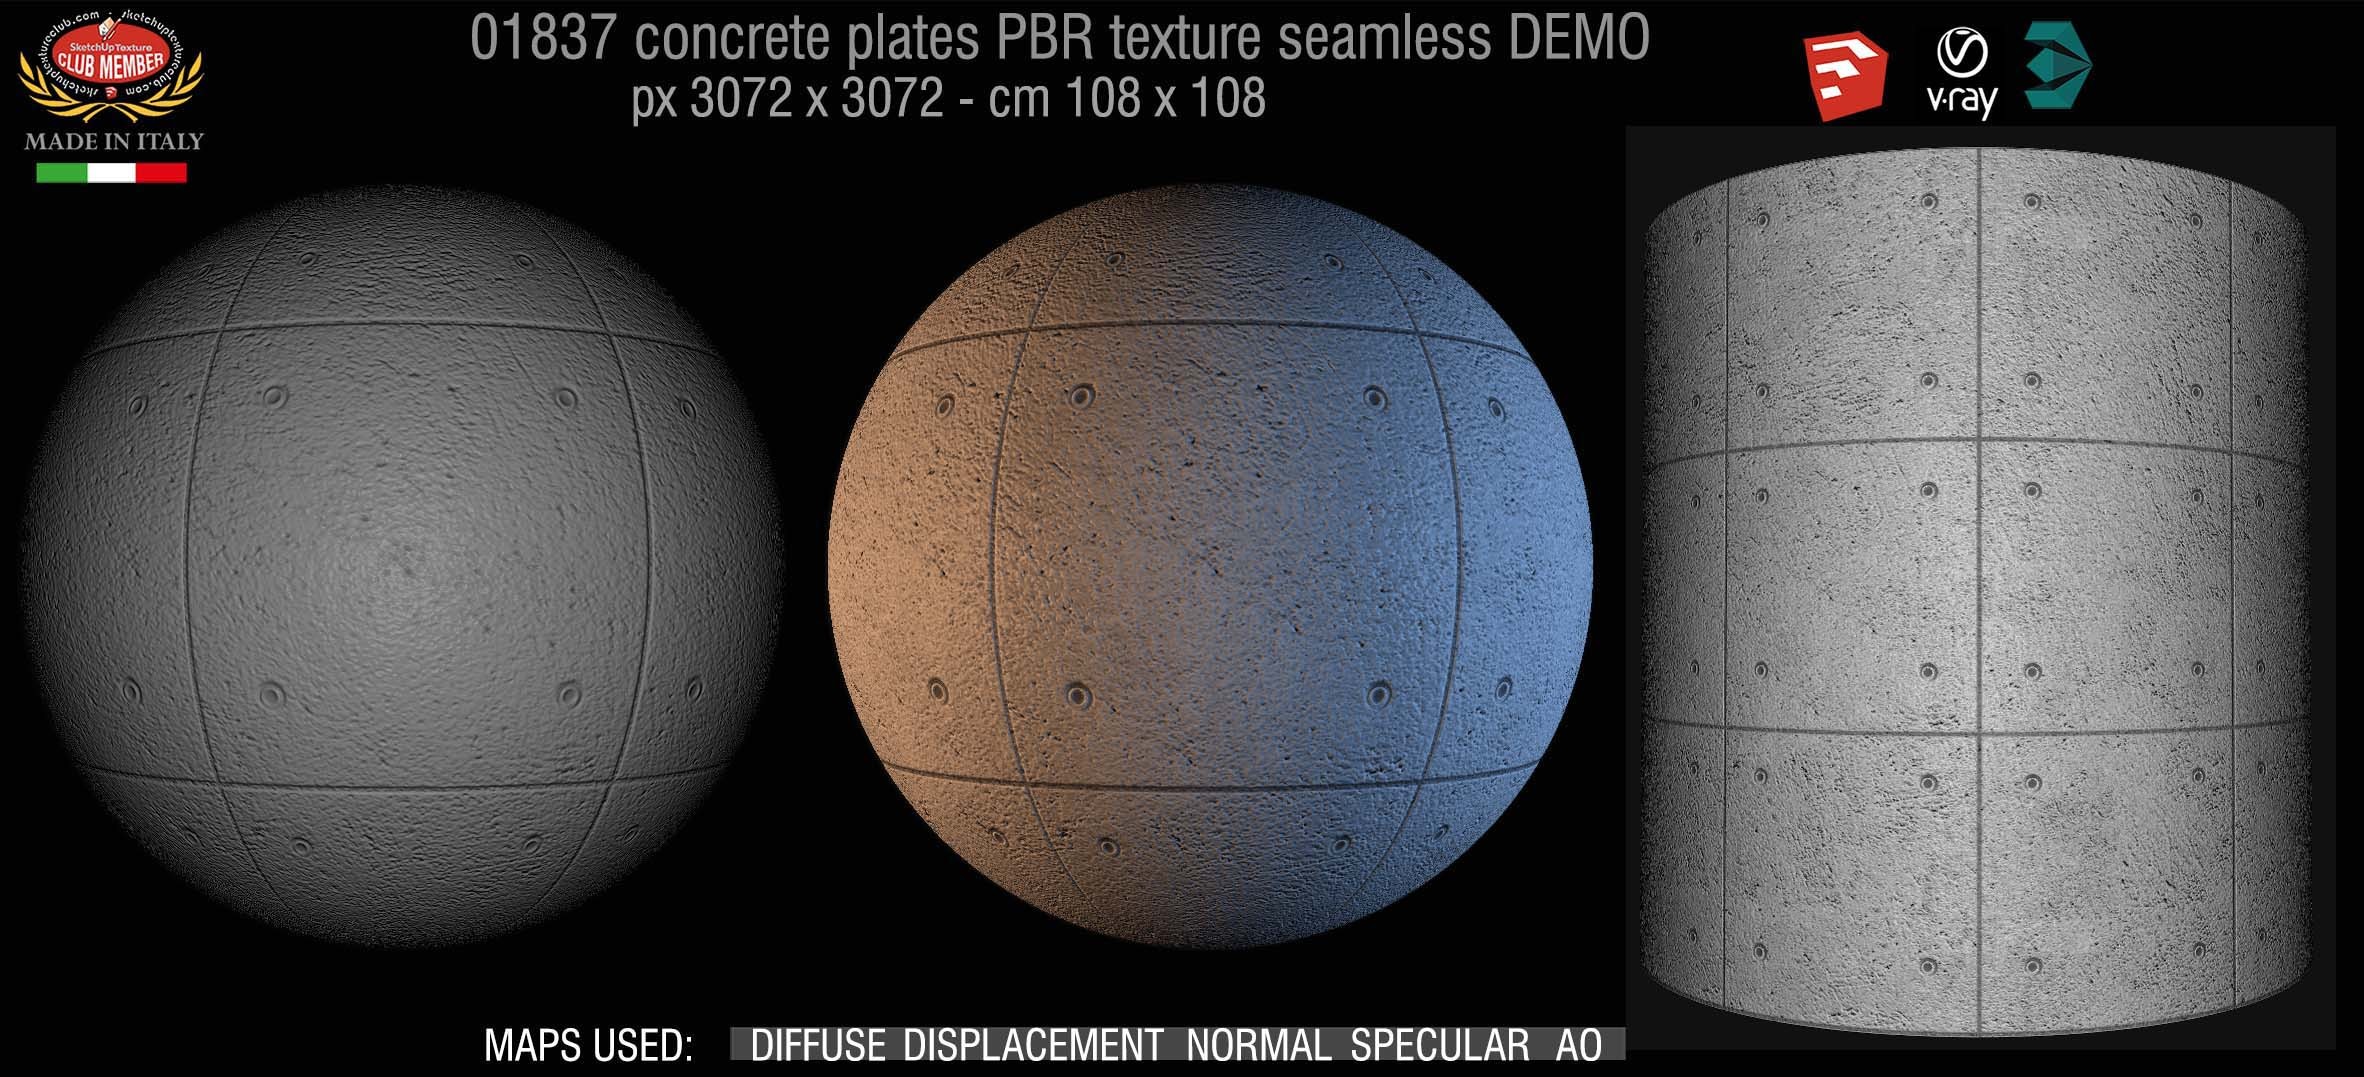 01837 Tadao Ando concrete plates PBR texture seamless DEMO